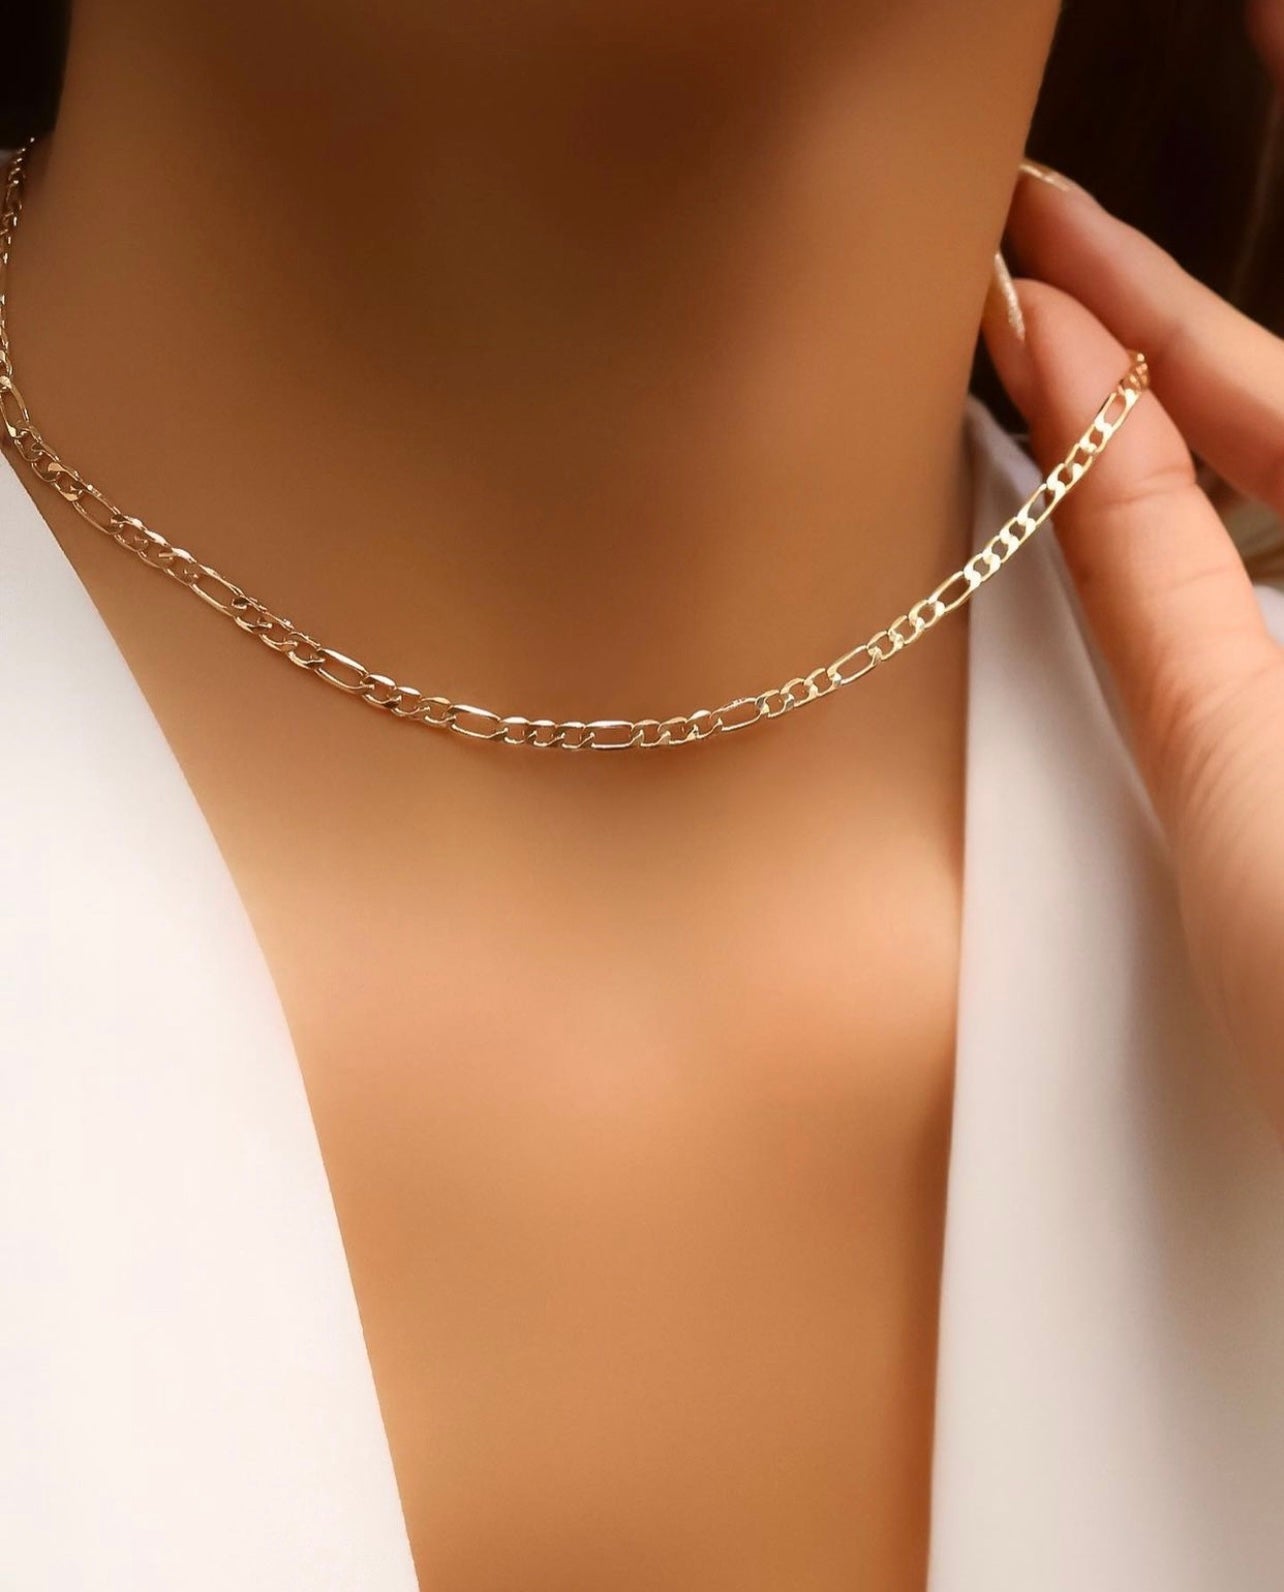 Kacy 18K Gold Necklace - Gold | Gold necklace women, Necklace, Gold necklace  designs